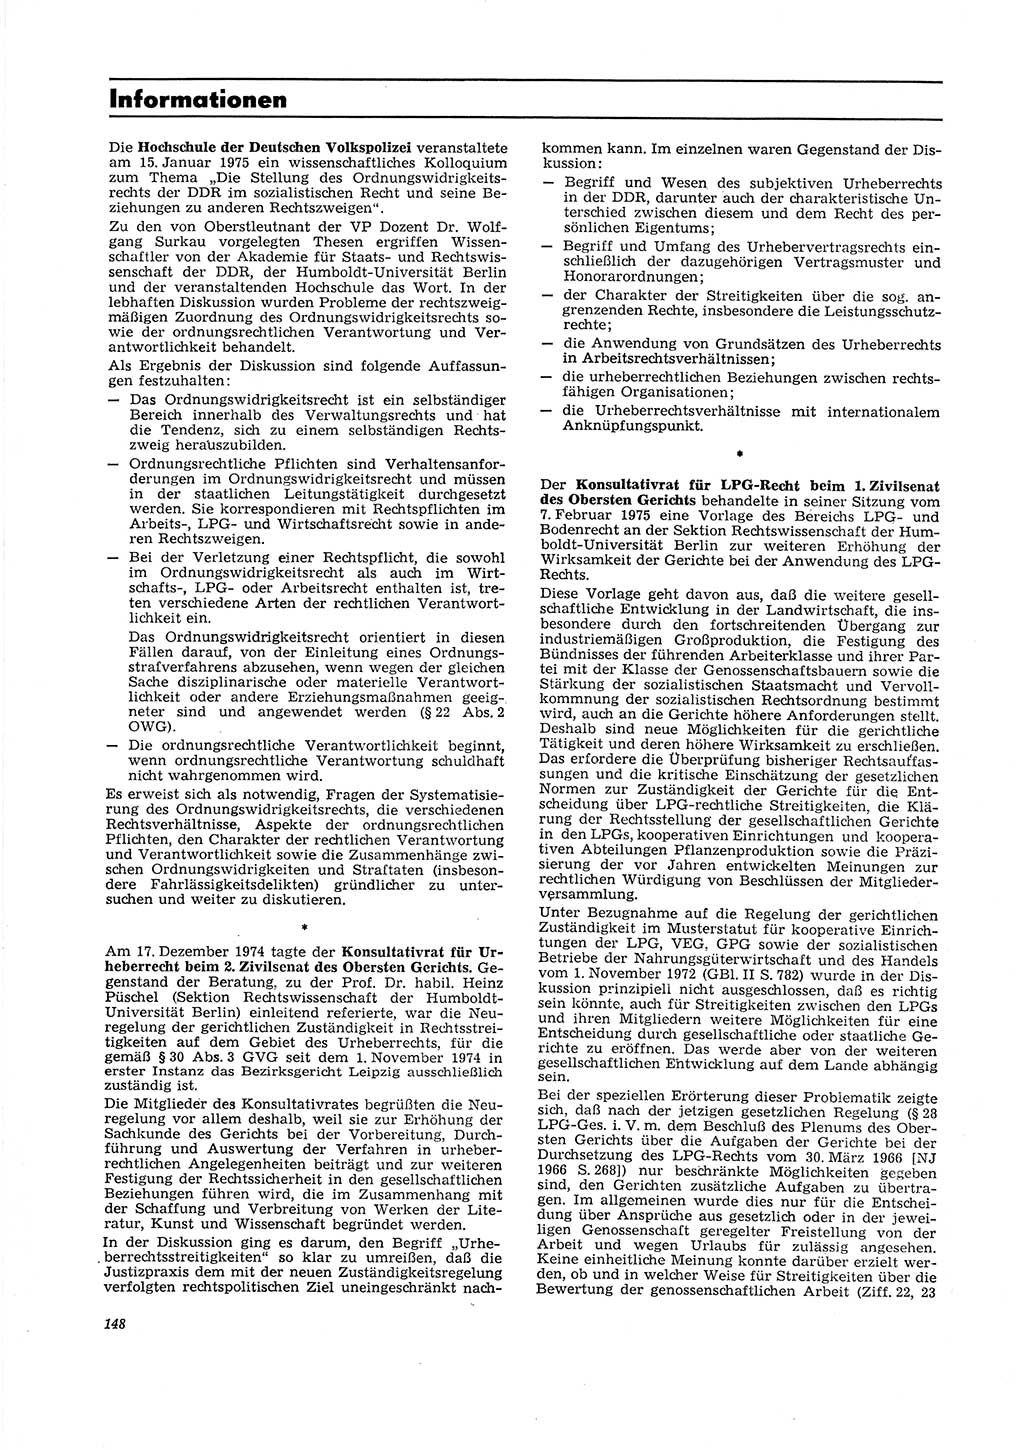 Neue Justiz (NJ), Zeitschrift für Recht und Rechtswissenschaft [Deutsche Demokratische Republik (DDR)], 29. Jahrgang 1975, Seite 148 (NJ DDR 1975, S. 148)